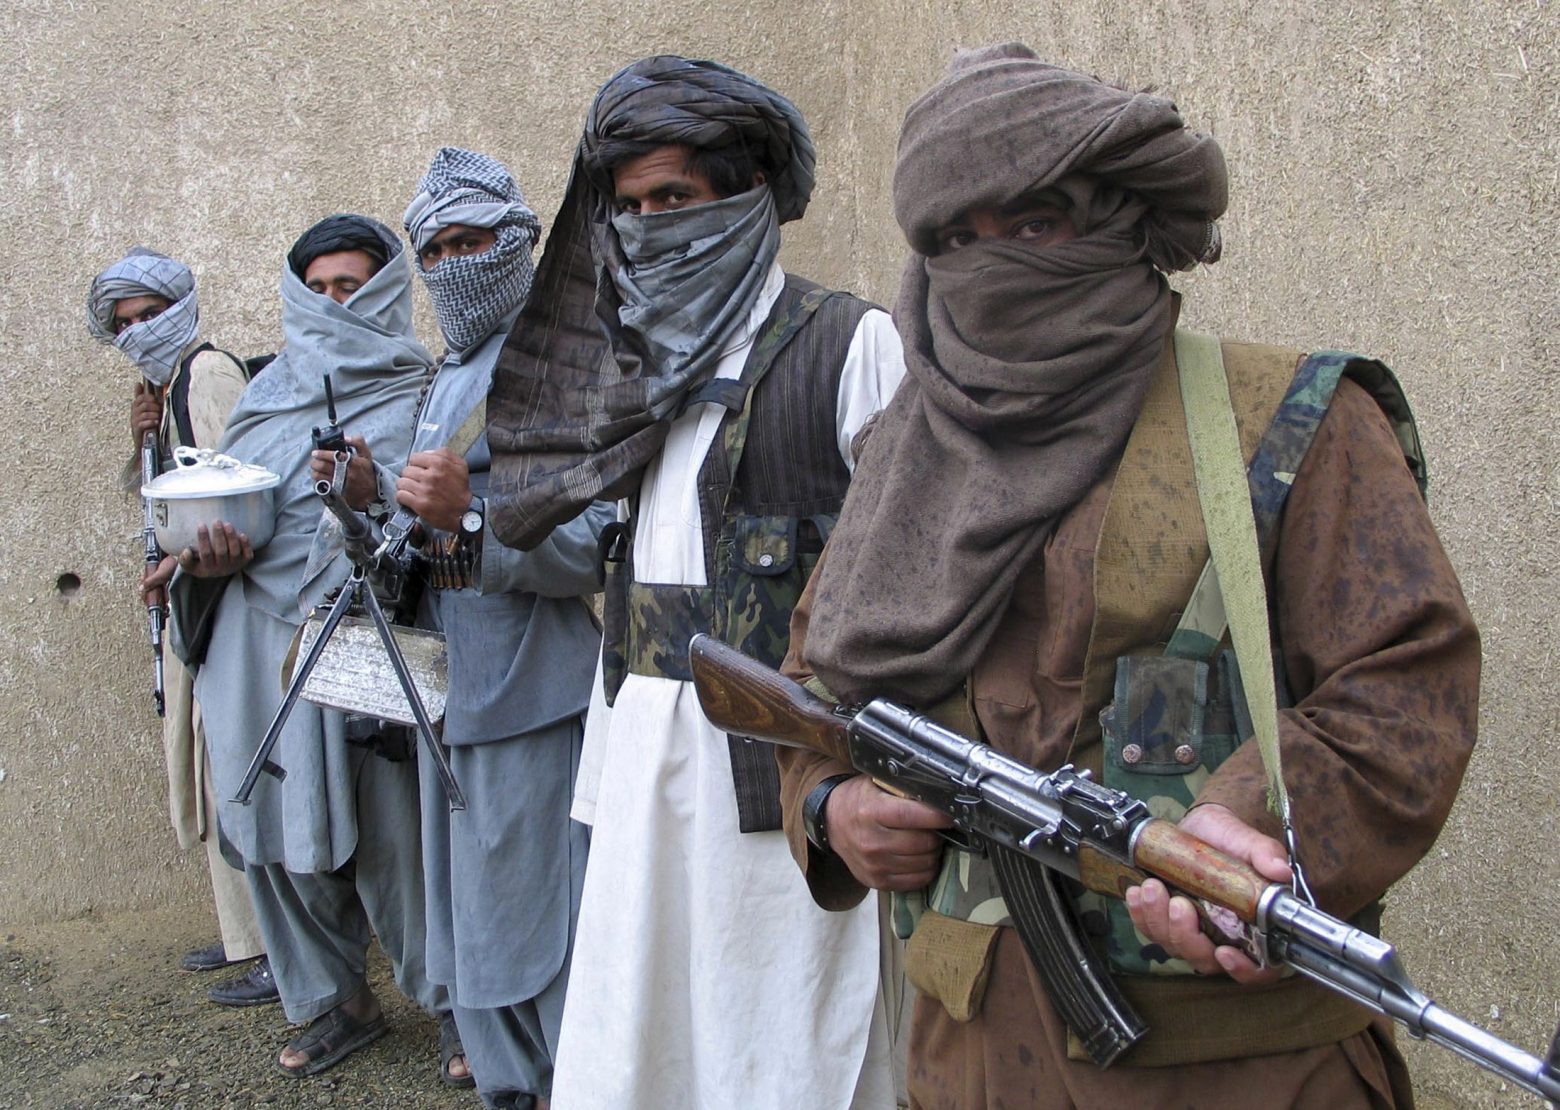 Οι ΗΠΑ ανακοίνωσαν νέες κυρώσεις κατά των Ταλιμπάν λόγω «της καταπίεσης των γυναικών» στο Αφγανιστάν